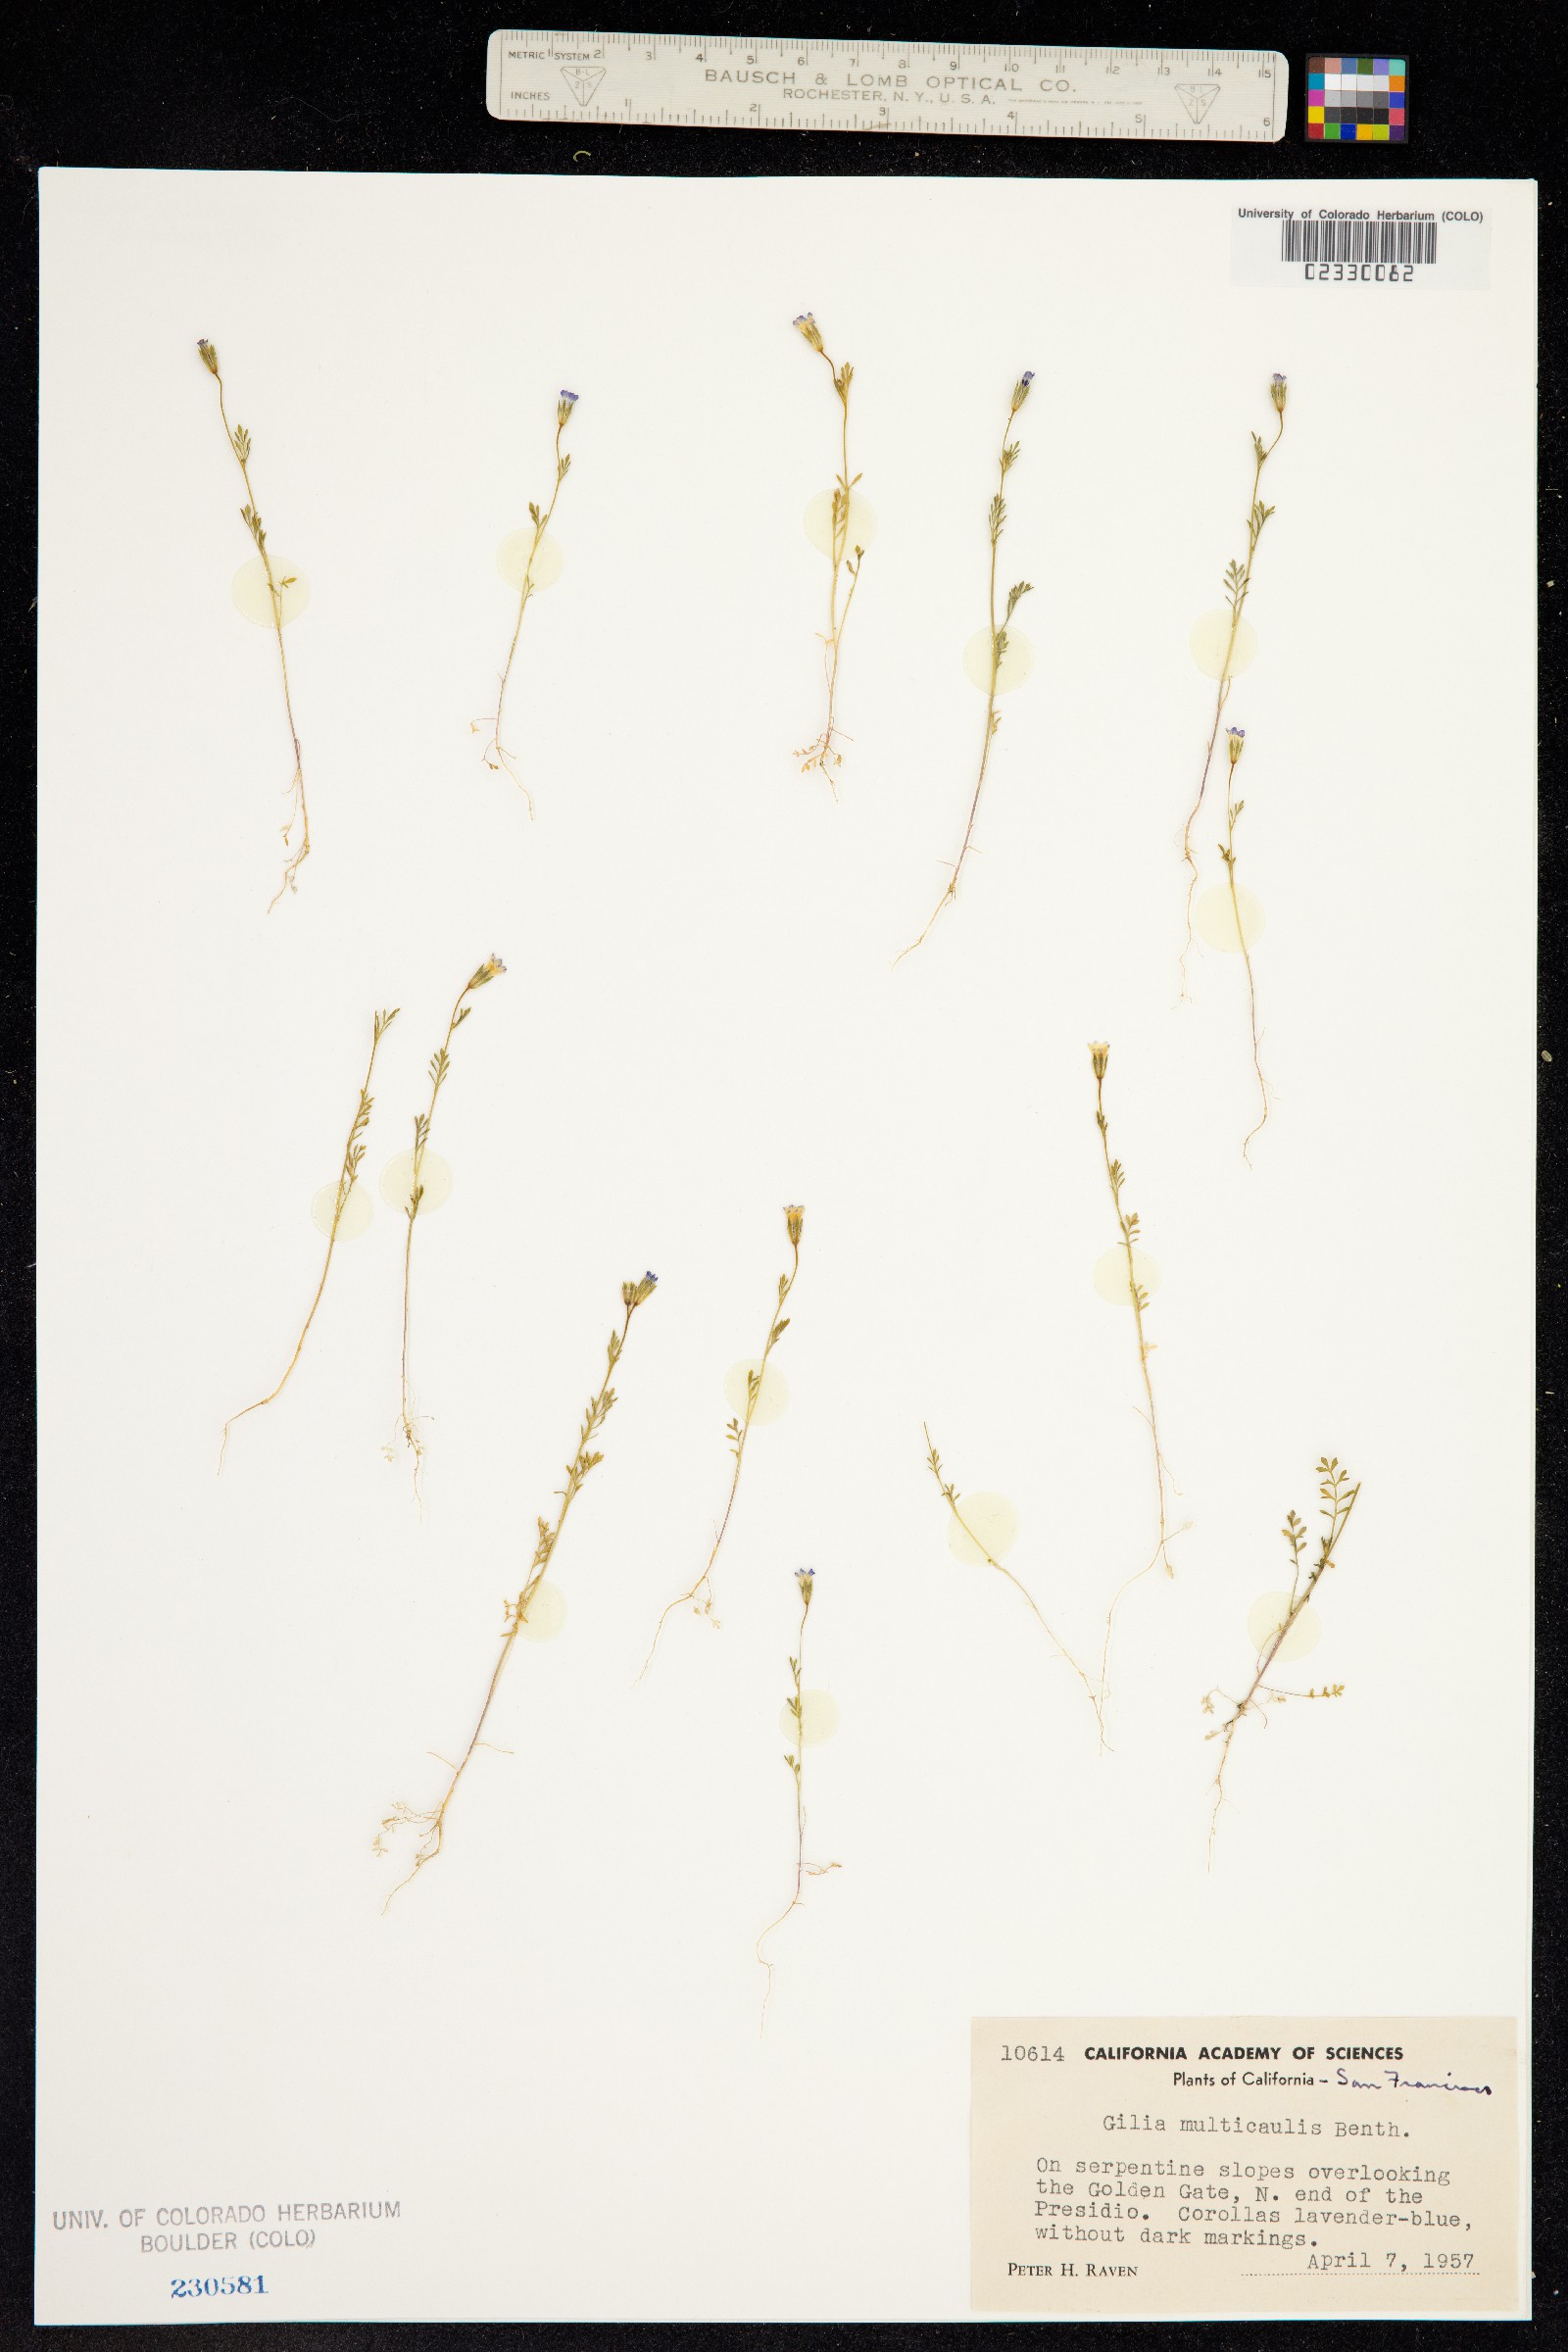 Gilia achilleifolia ssp. multicaulis image